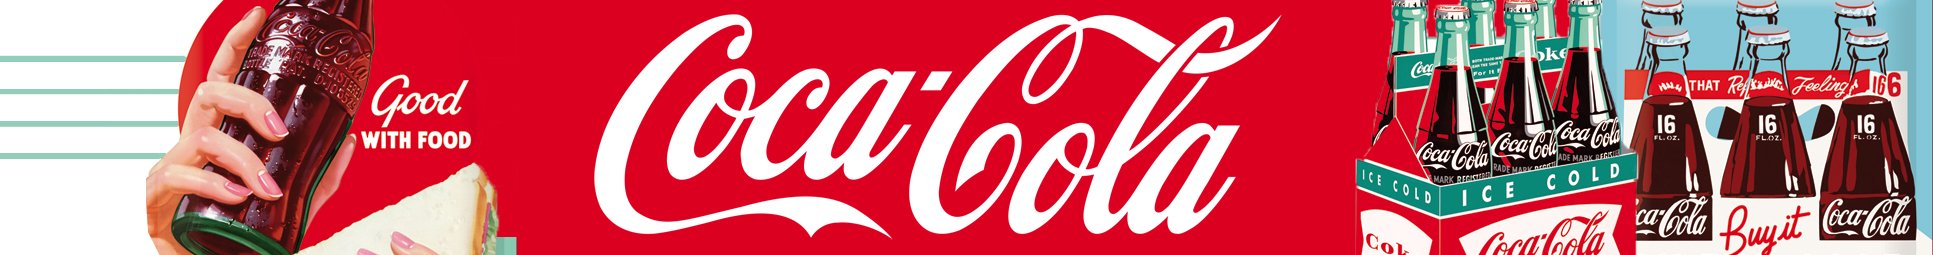 coca-cola_header_kategorie